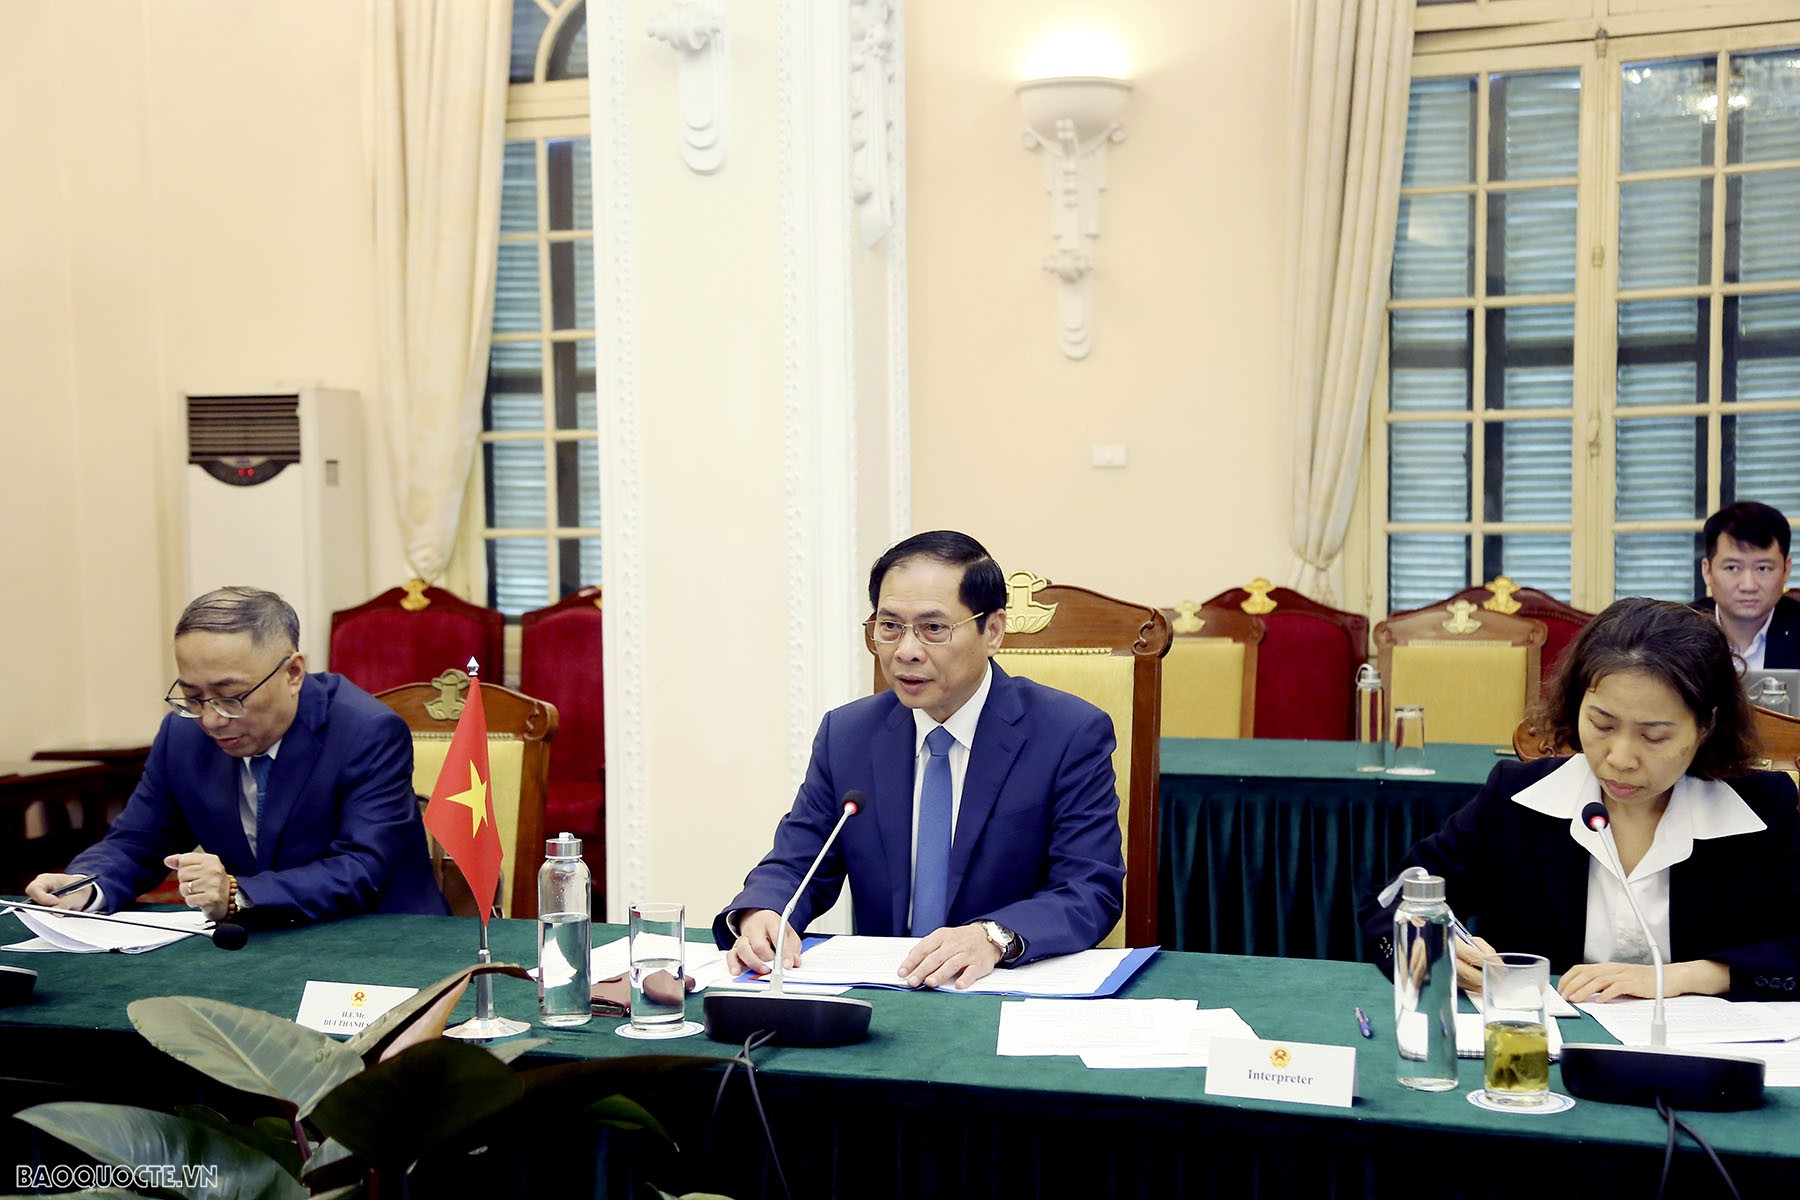 Vietnam, Uzbekistan Foreign Ministers hold talks in Hanoi